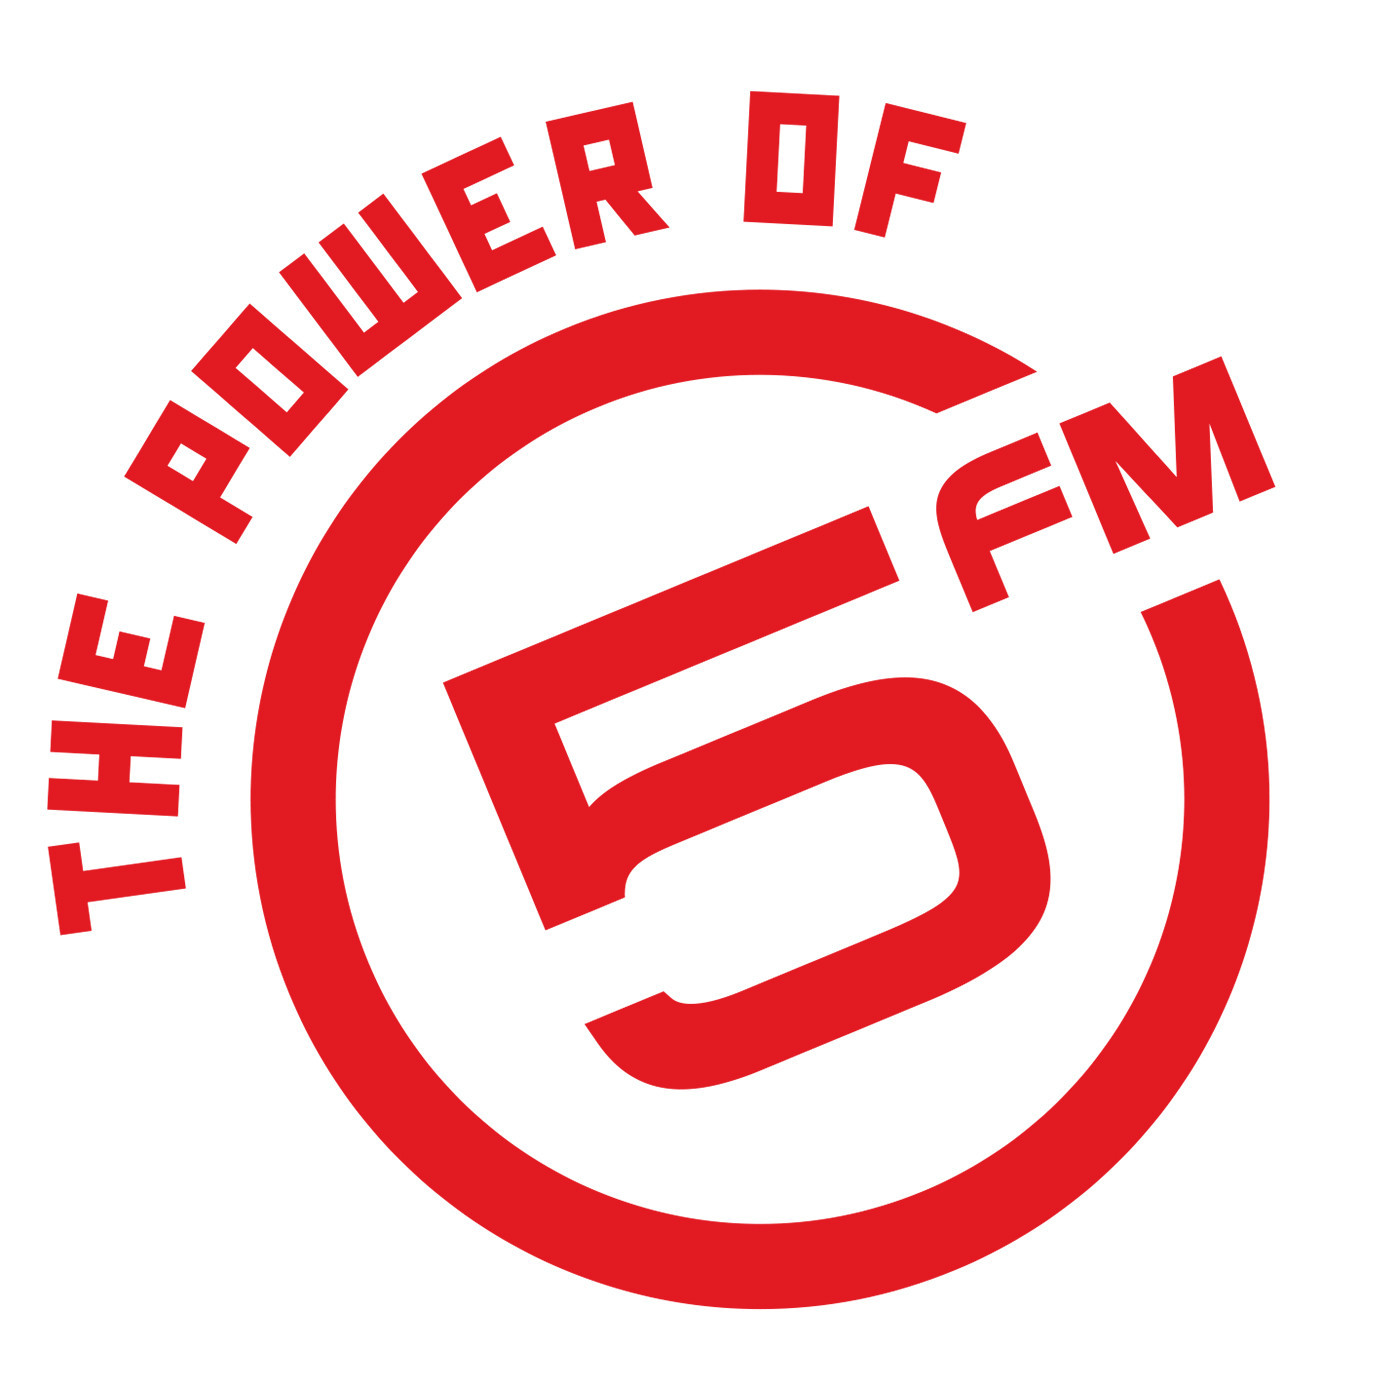 5FM LEGENDS MAFIKIZOLO (10 SEP)